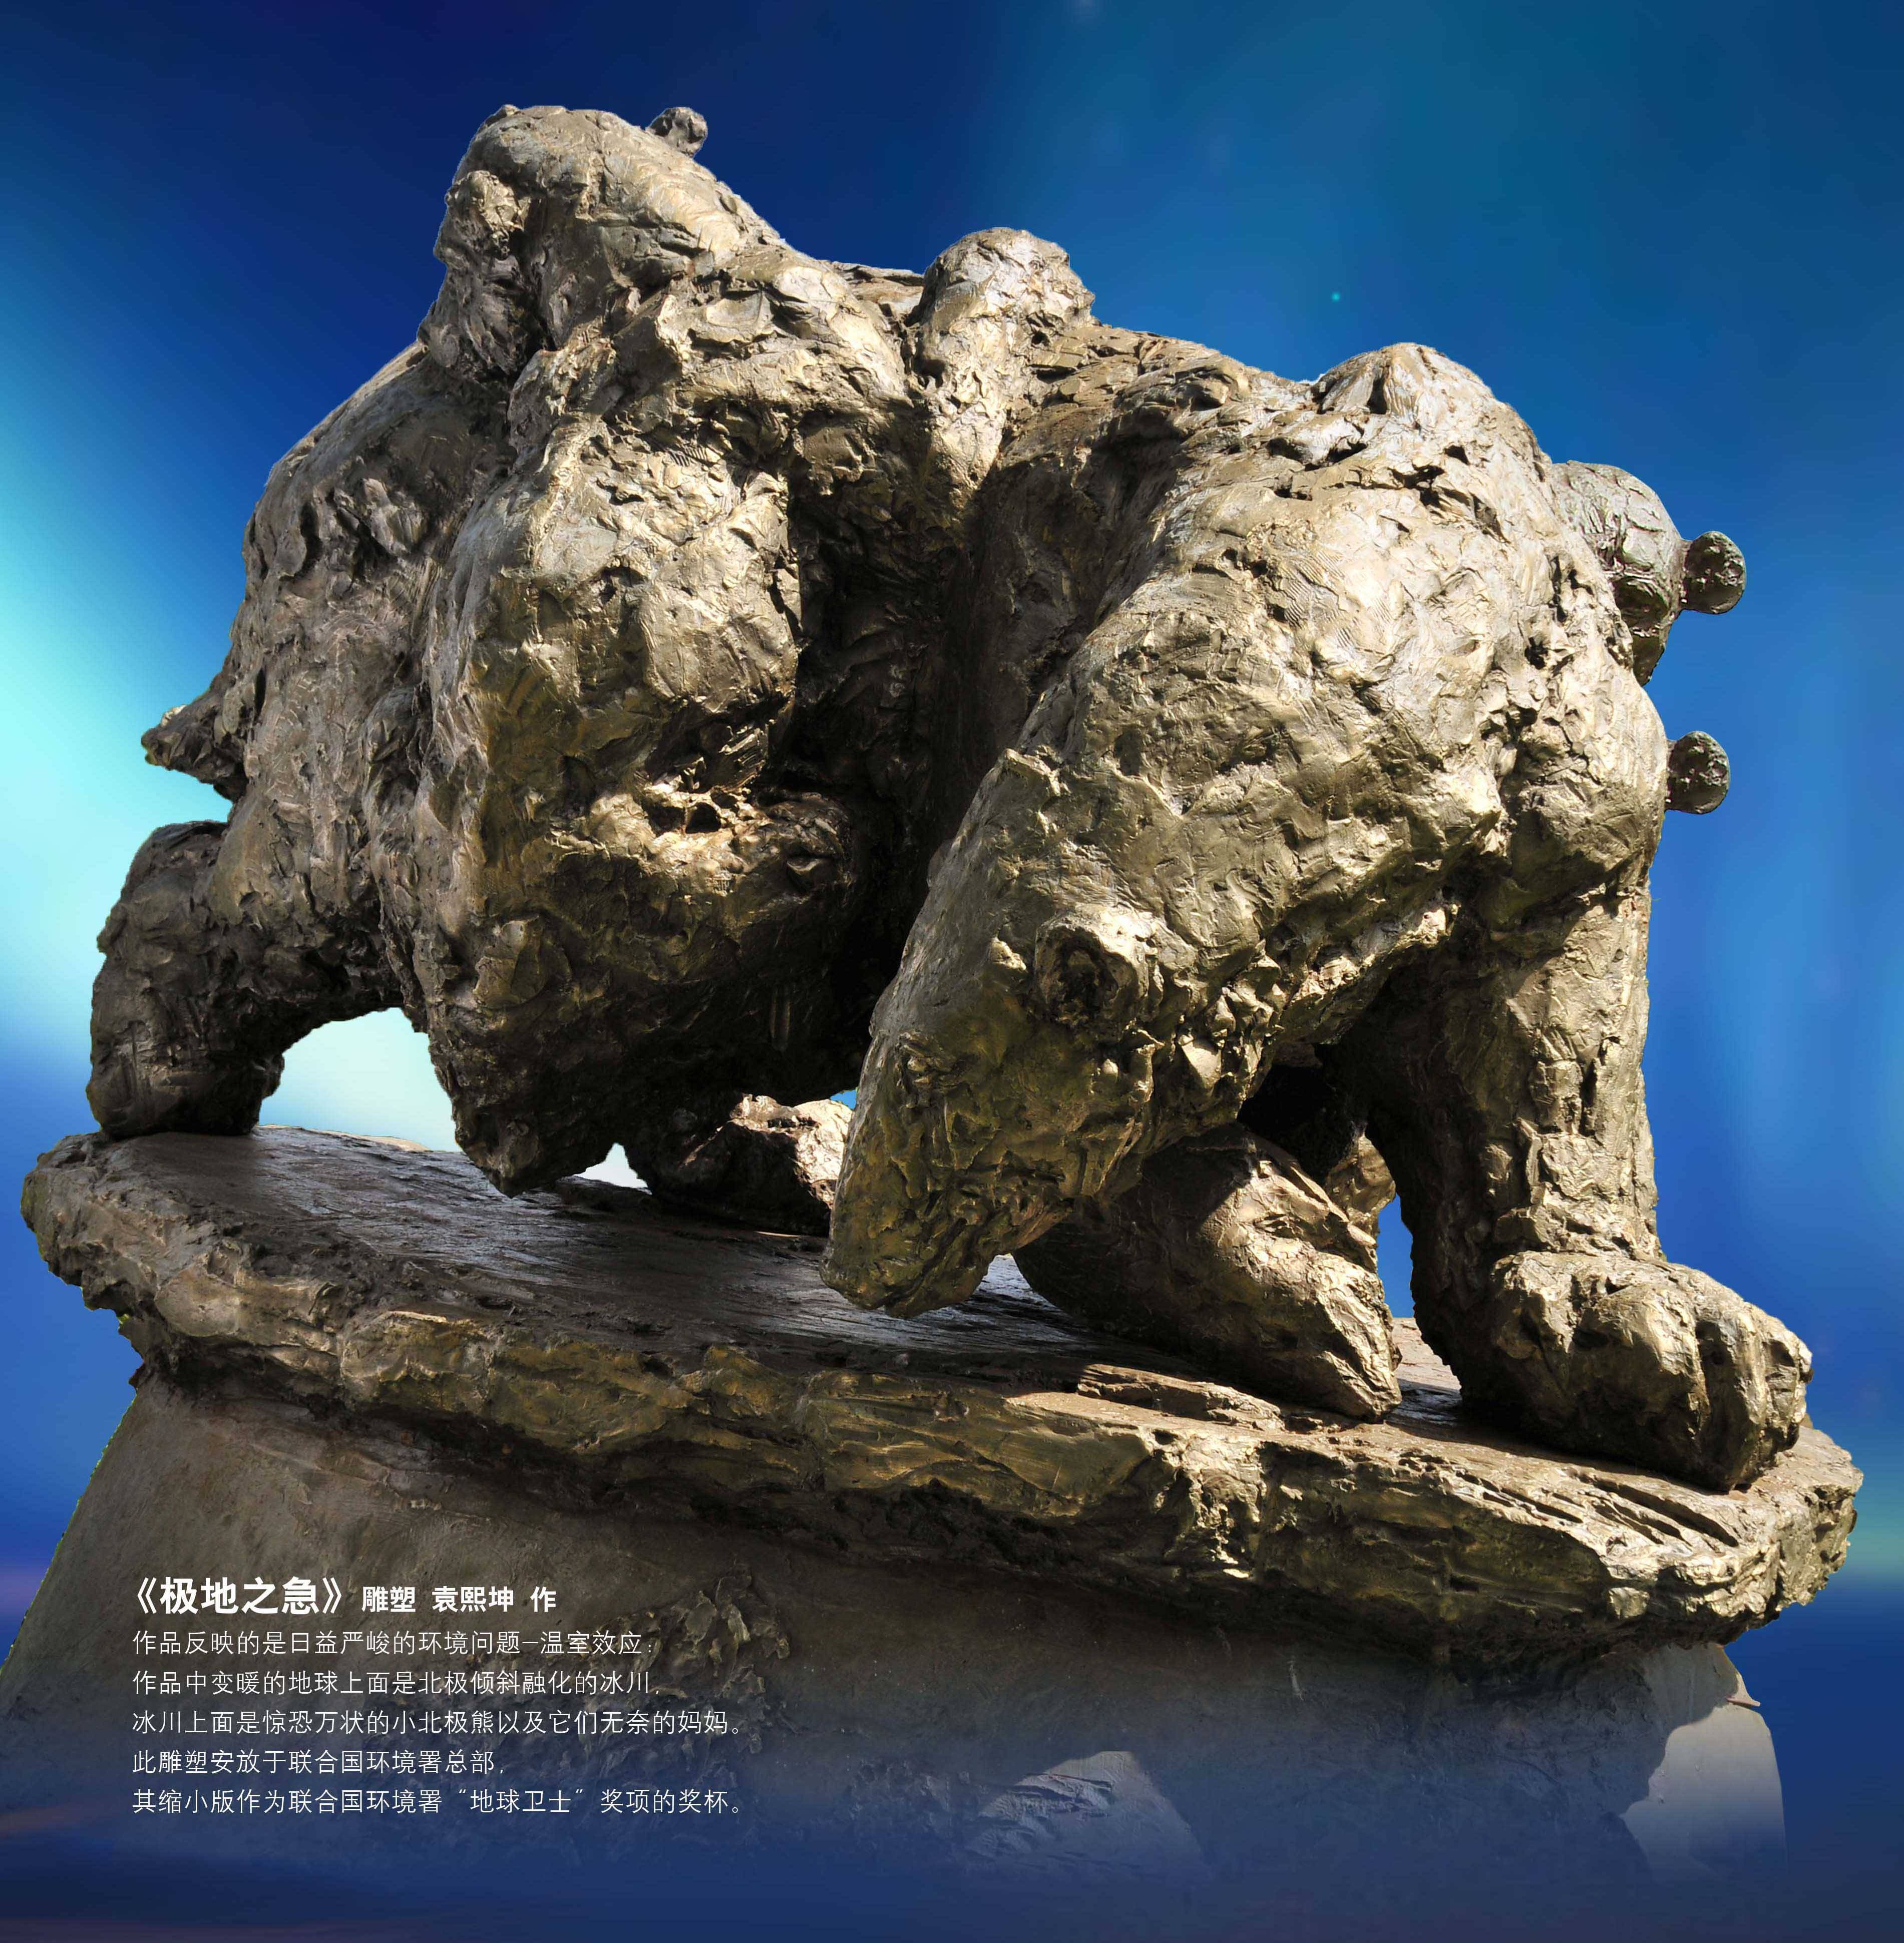 袁熙坤雕塑作品拍卖为新冠肺炎疫苗研发献爱心